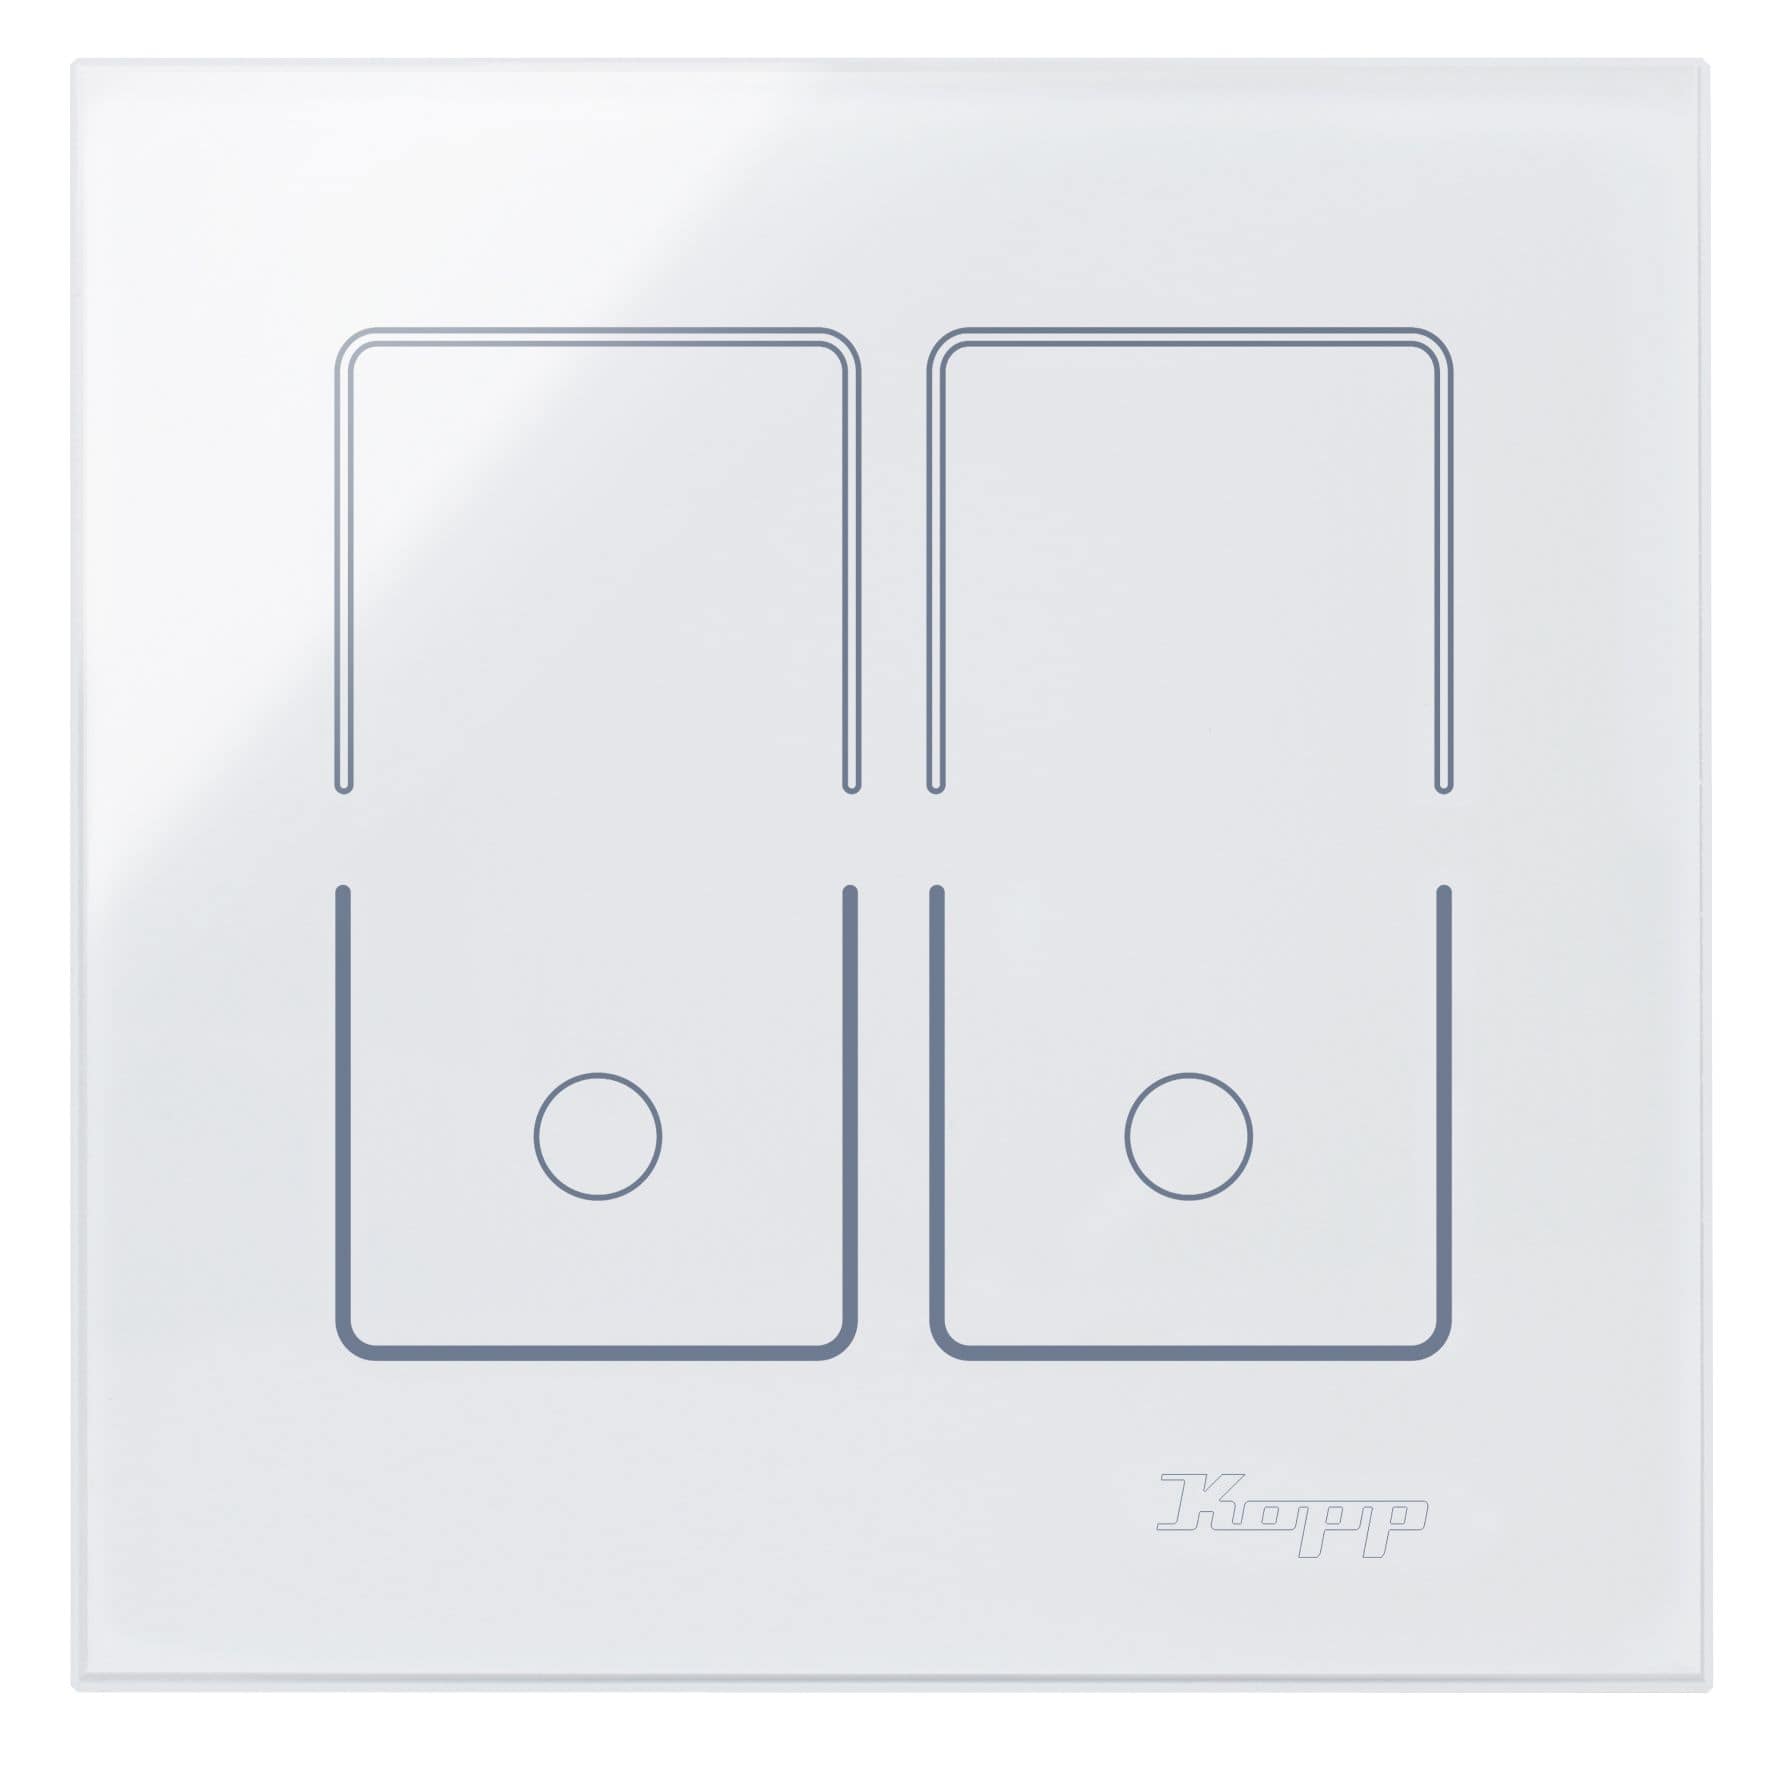 Kopp 852002010 Glas-Touchsensor für Doppelschalter/Taster, weiß